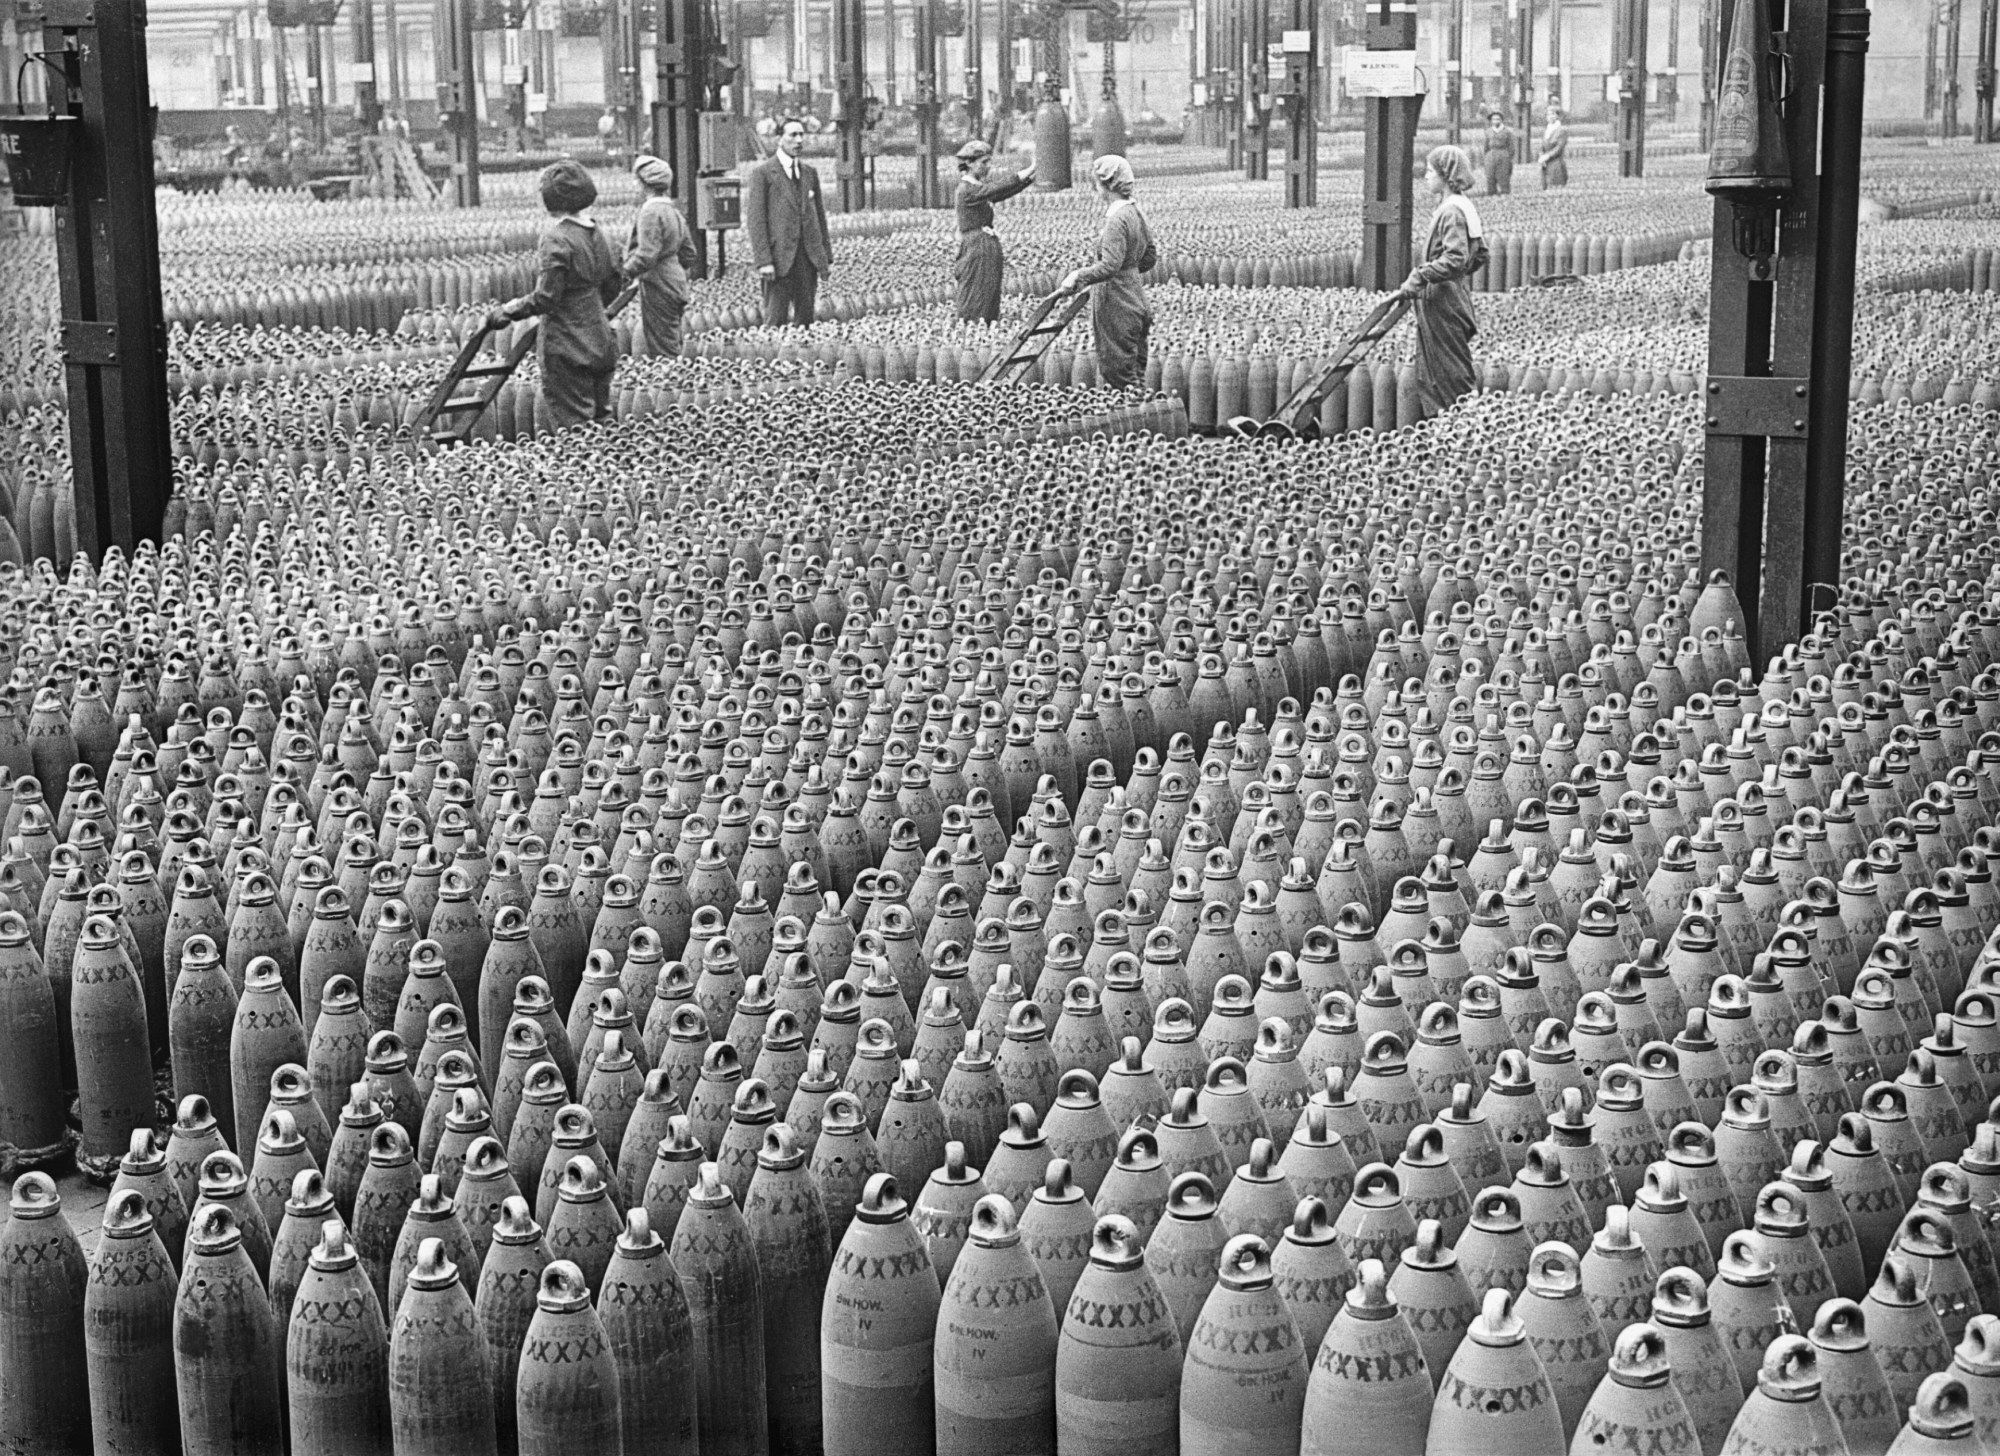 Fotografía de mujeres trabajando en una fábrica de bombas durante la Primera Guerra Mundial